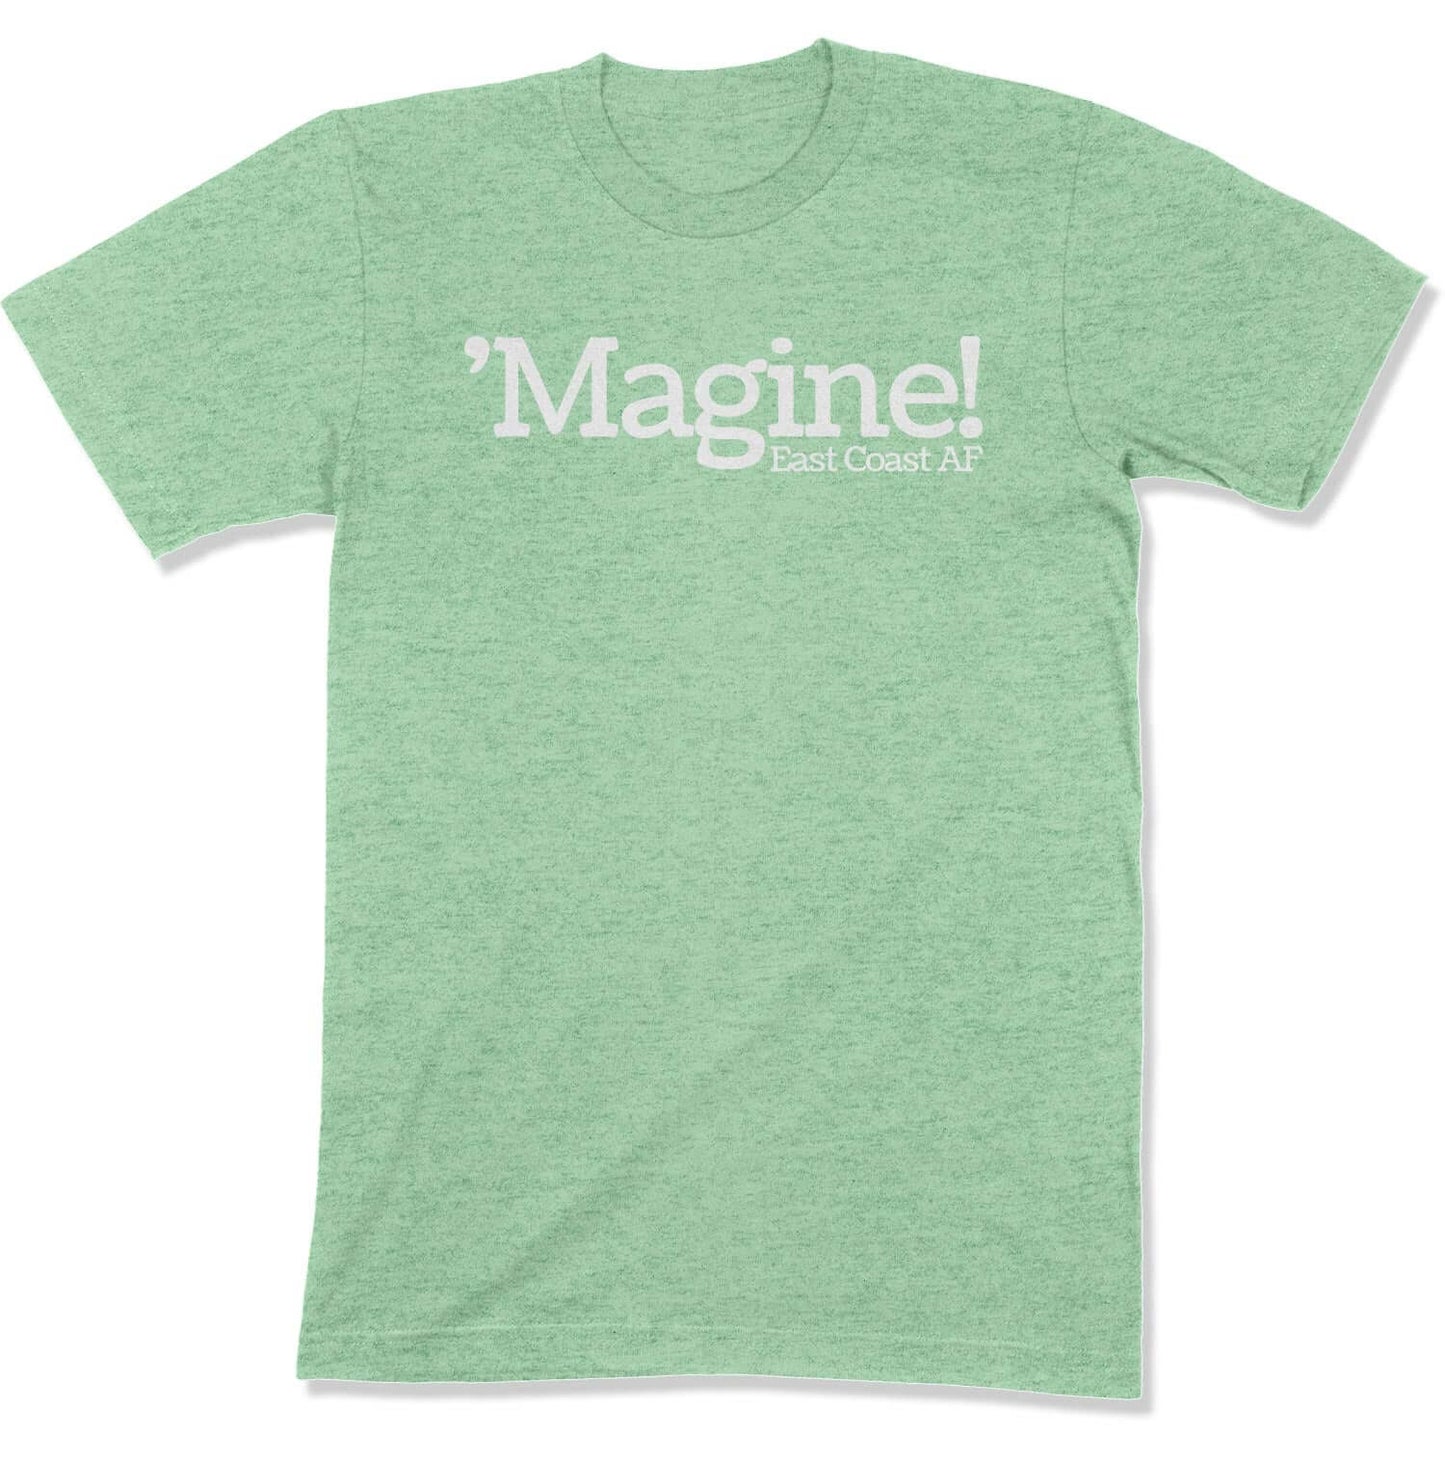 'Magine! Unisex T-Shirt in Color: Heather Prism Mint - East Coast AF Apparel